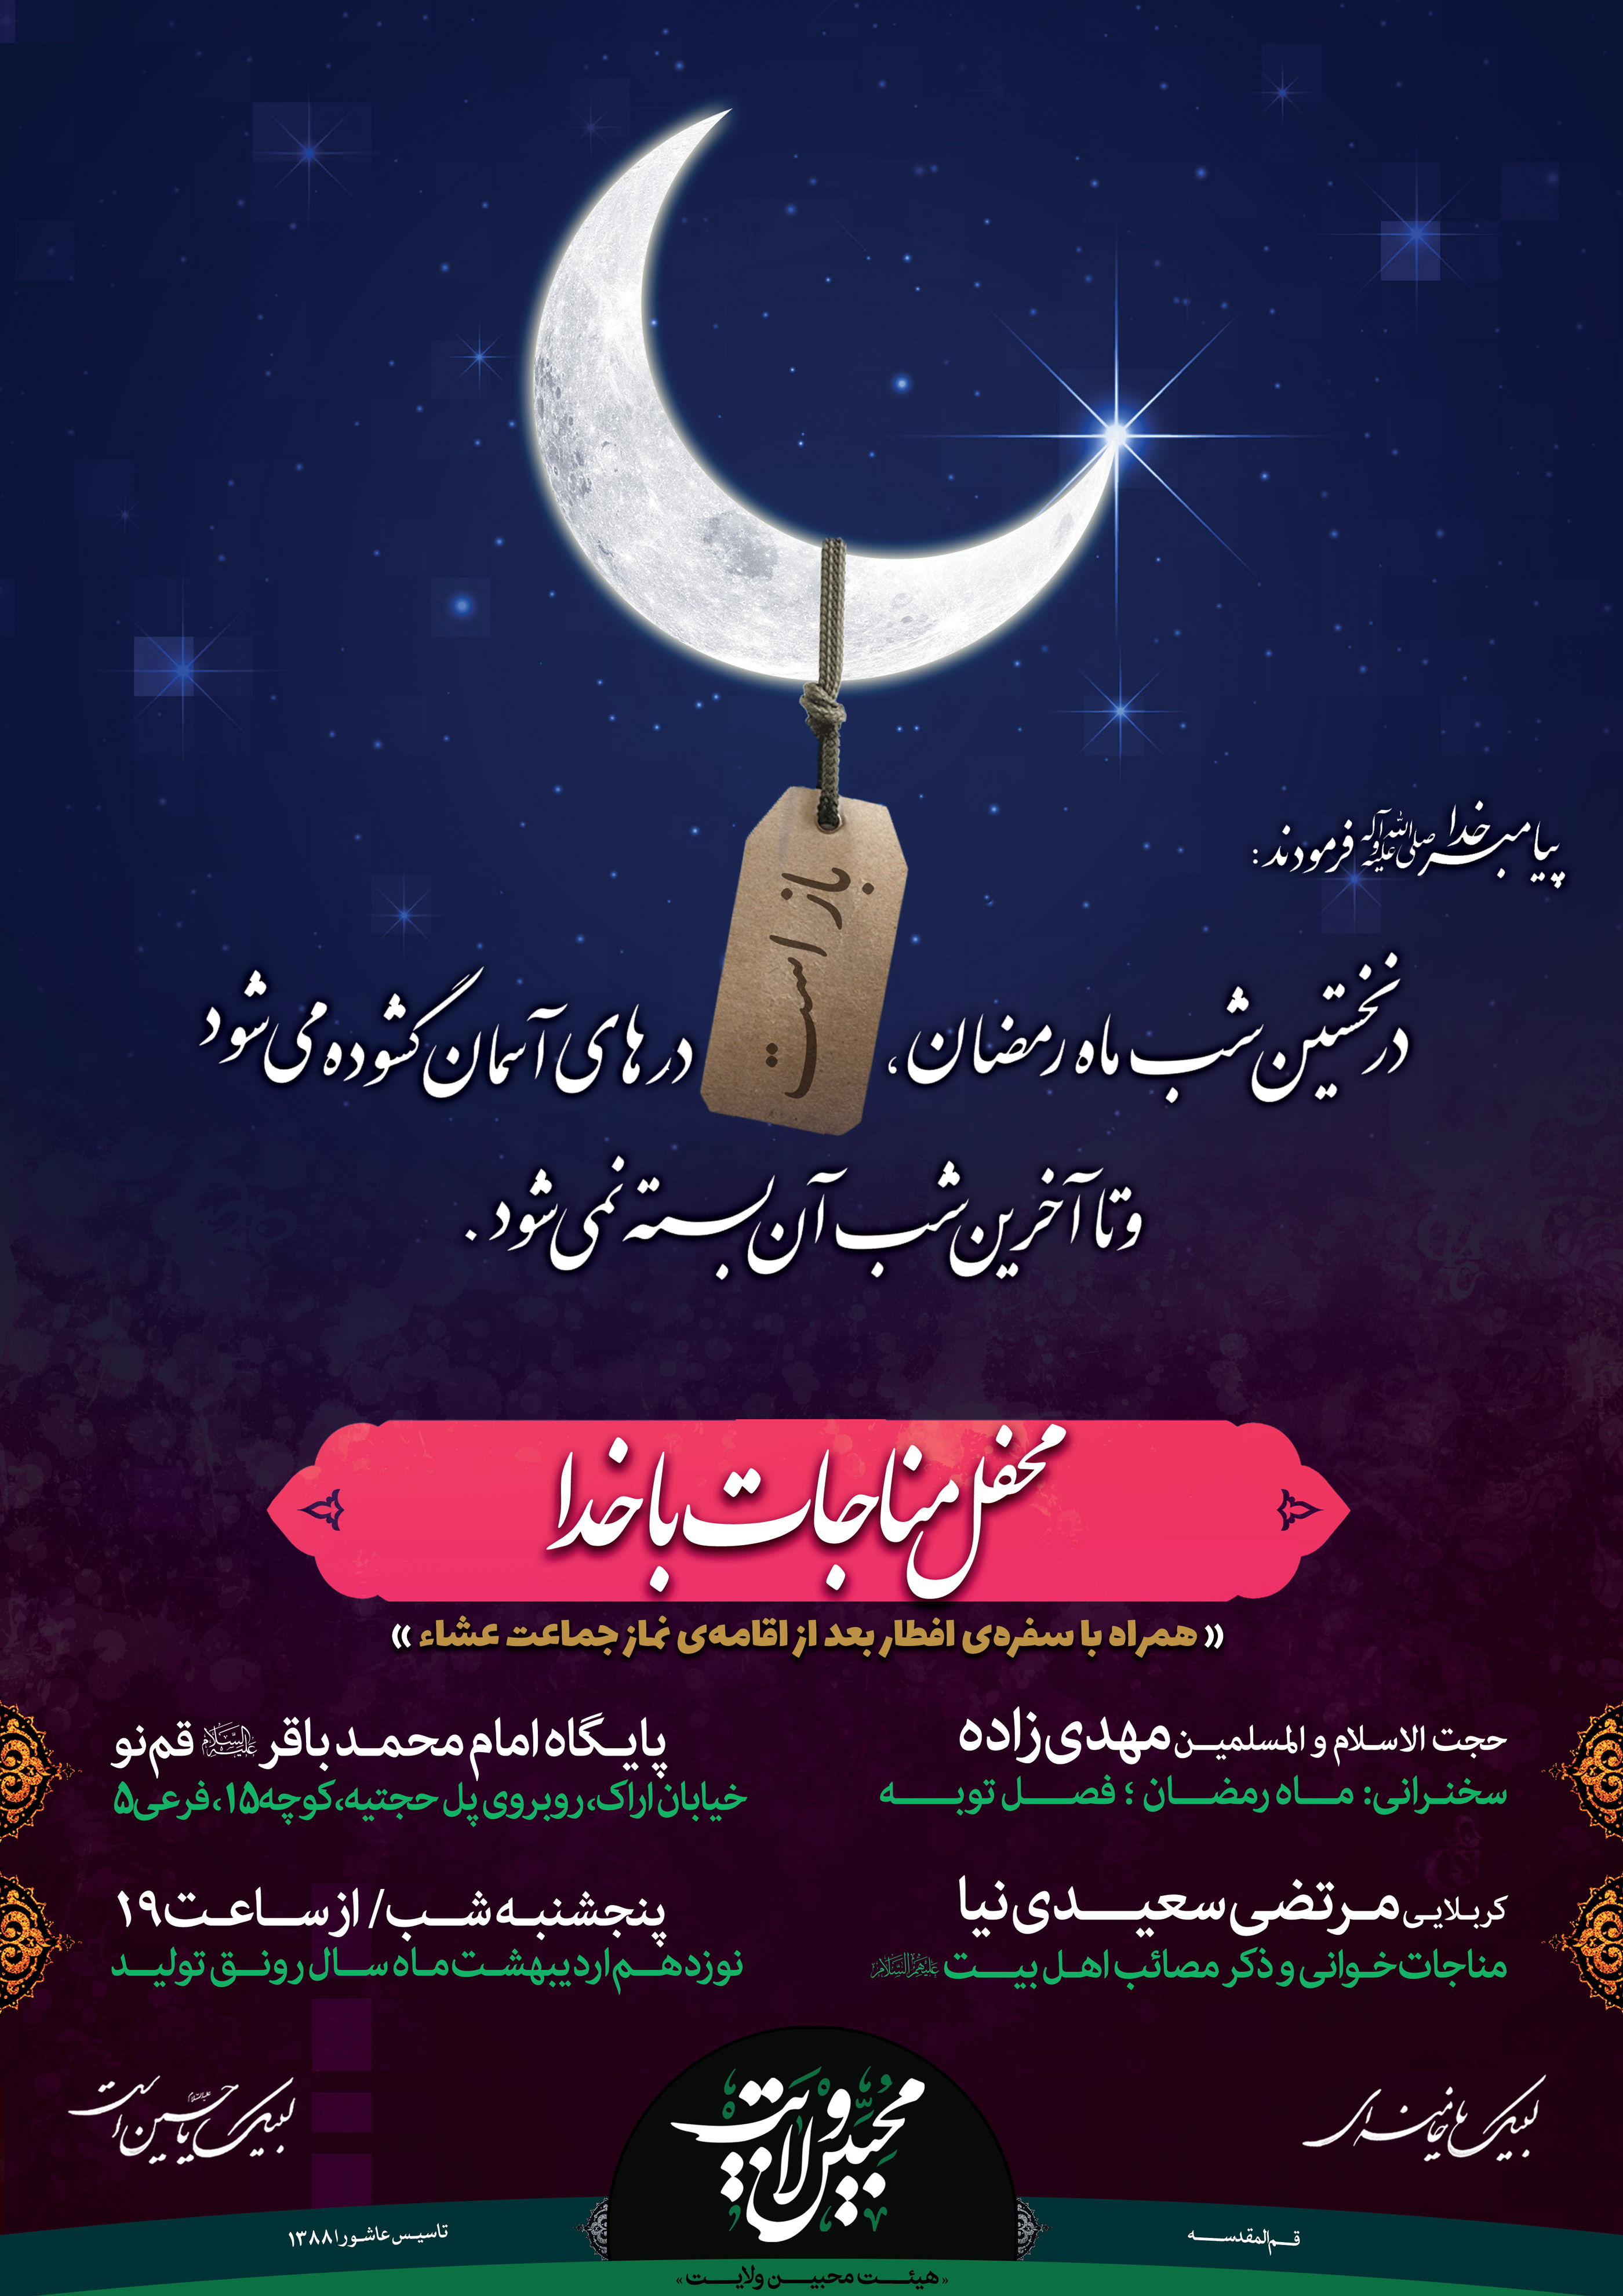 1398/02/19 اطلاعیه محفل مناجات با خدا - ماه مبارک رمضان